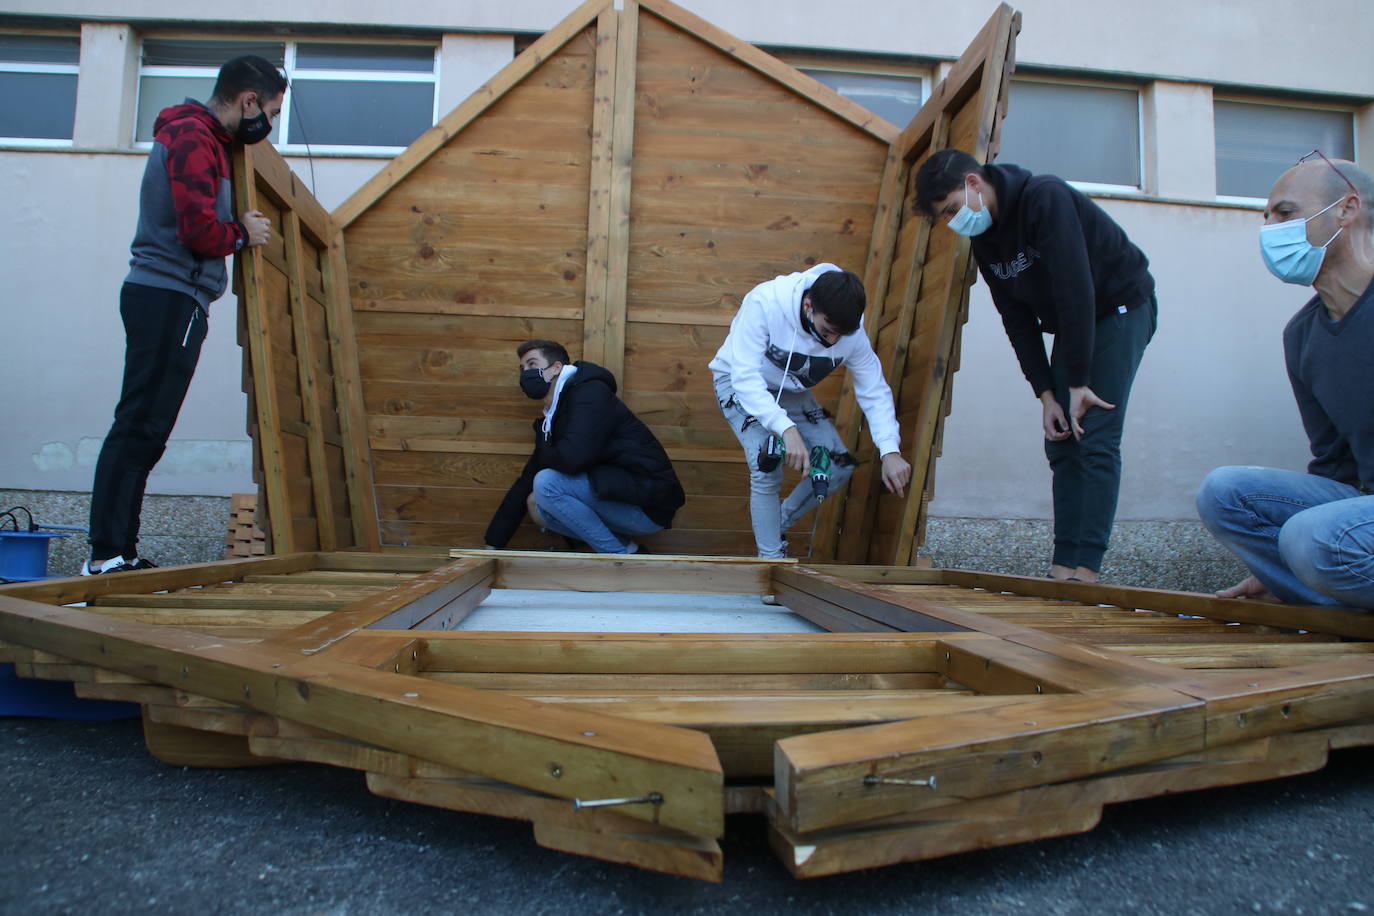 Construcción de una caseta de madera, cuyo diseño e instalación lo realizaron los alumnos de Formación Profesional Básica de ciclo de Madera del IES Ricardo Bernardo